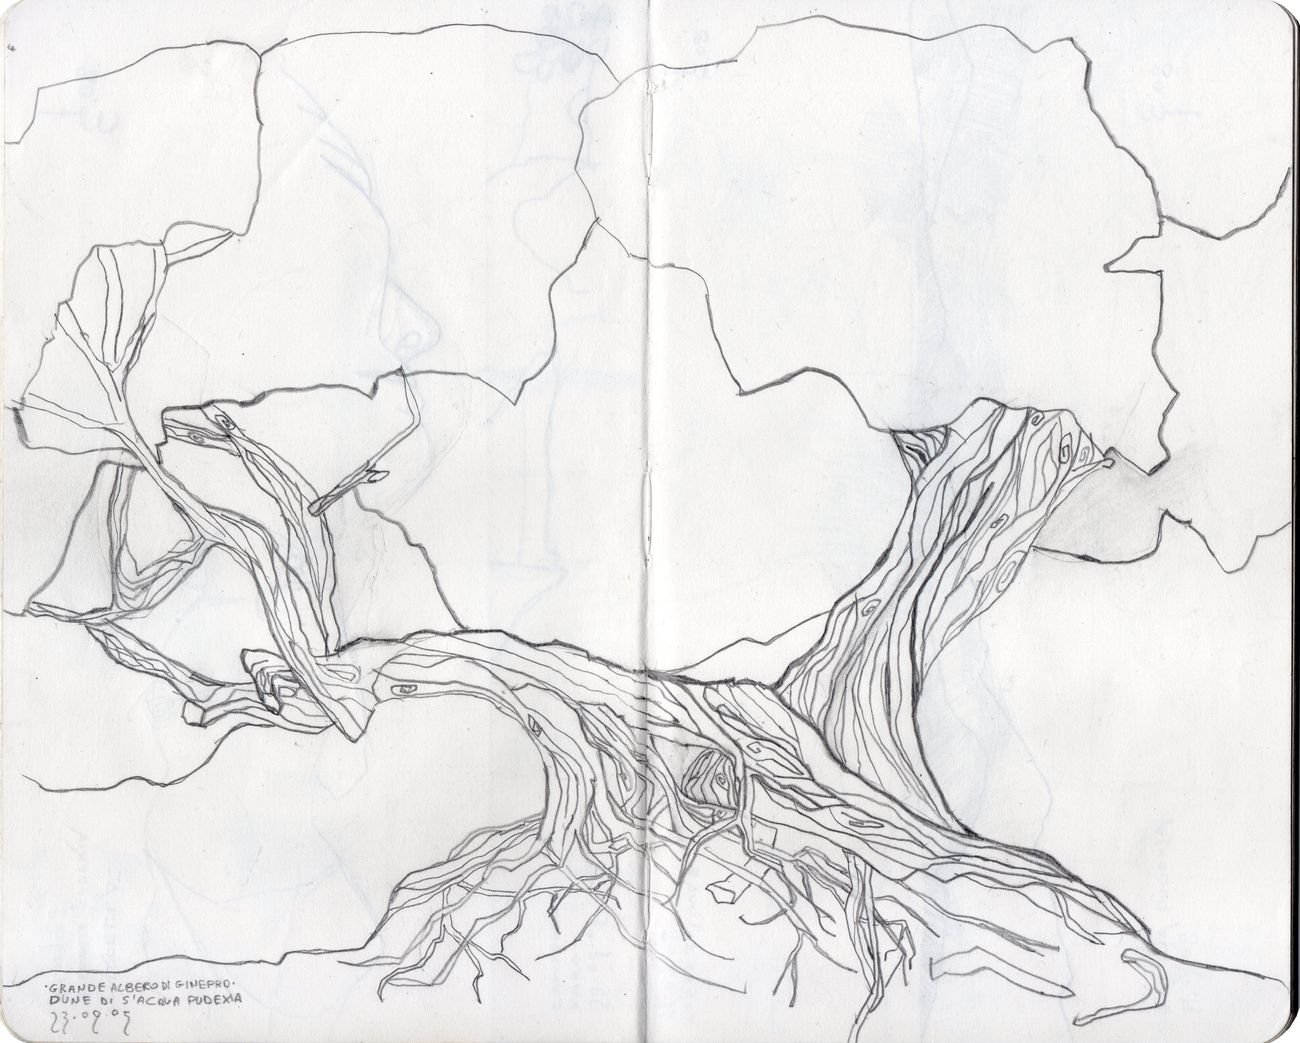 Edoardo Fontana, Grande albero di ginepro, dune di Sant’Acqua Pudexia, 2005. Grafite su carta. Courtesy l’artista